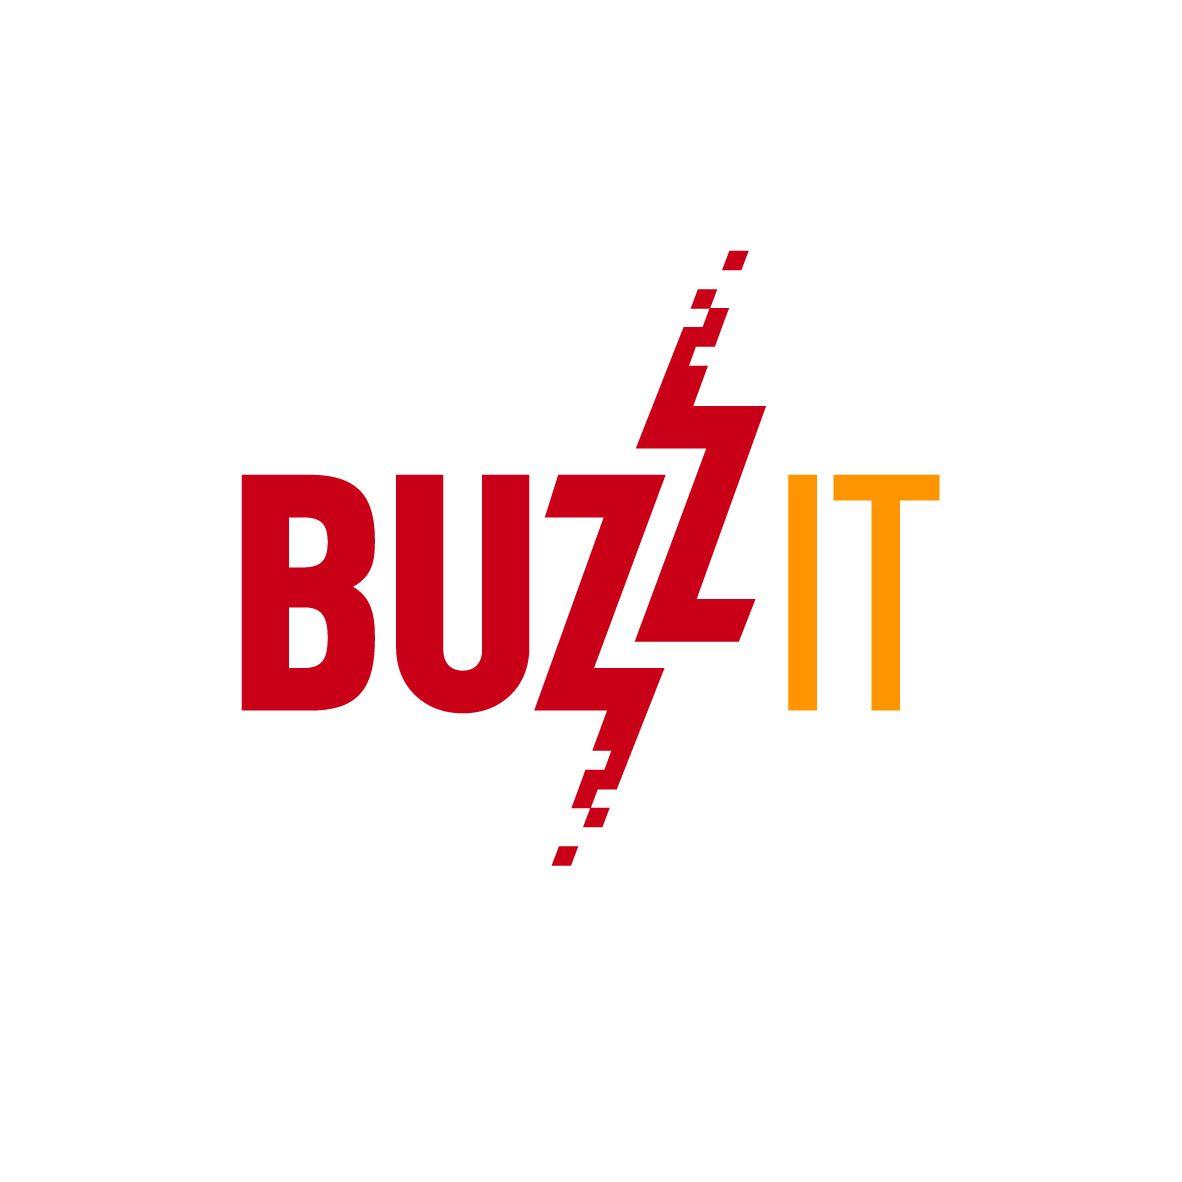 Buzz Logo - Computer Logo Design for Buzz IT by Abaca. Design